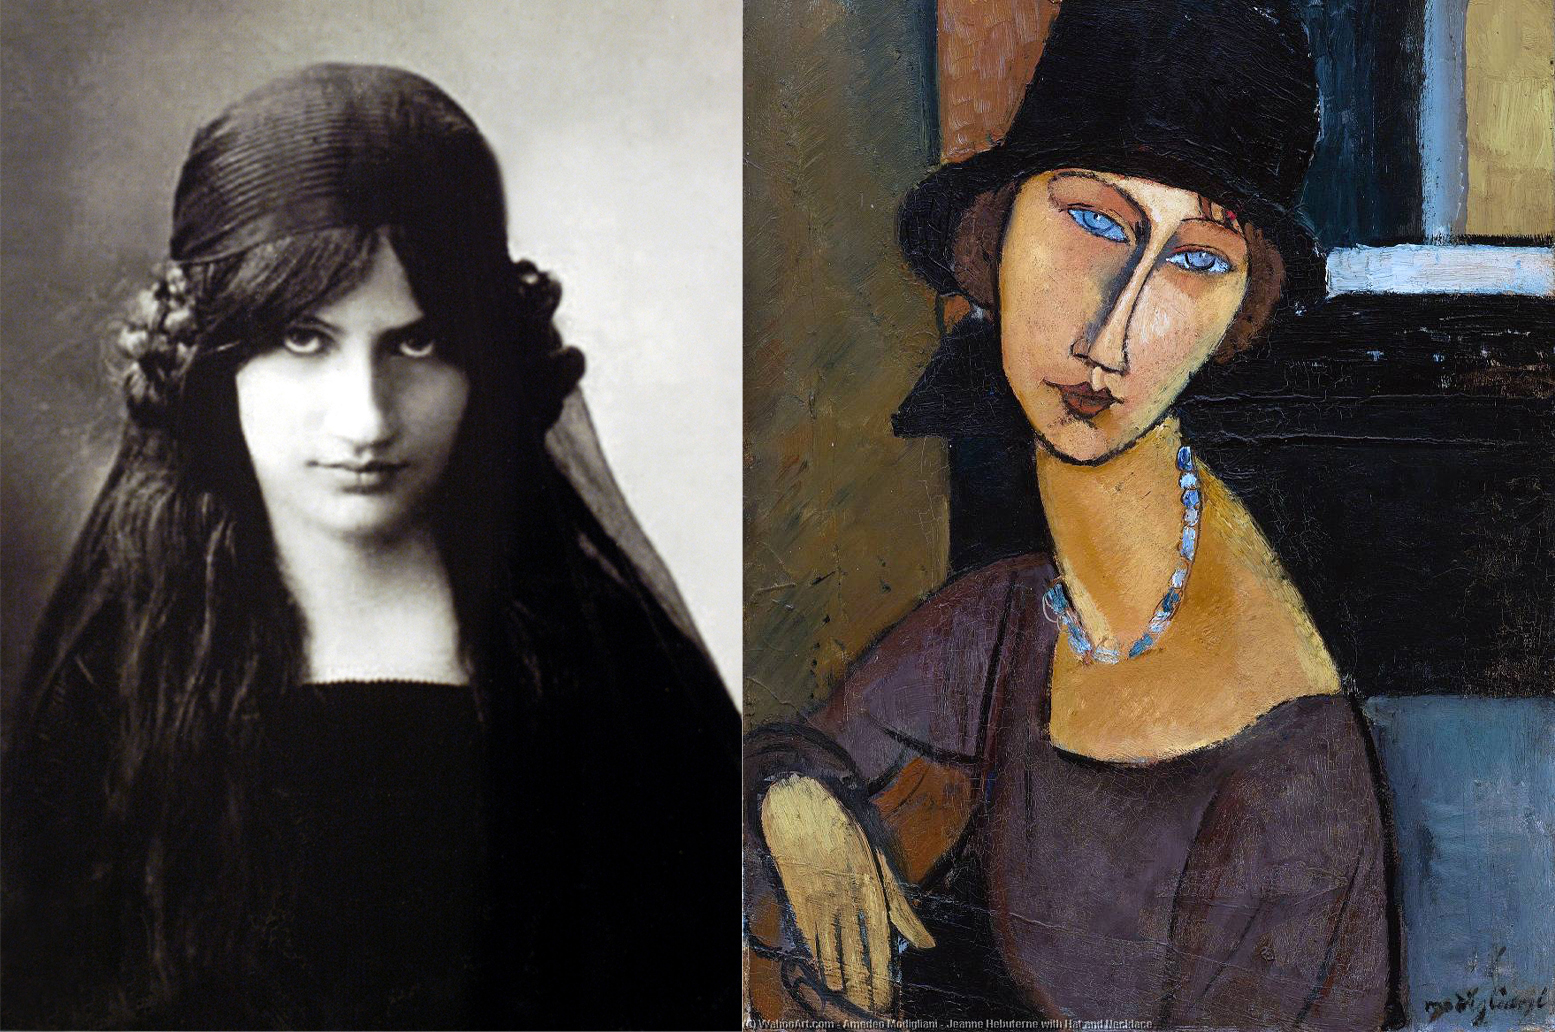 Jeanne Hébuterne y uno de los retratos de ella de Modigliani
